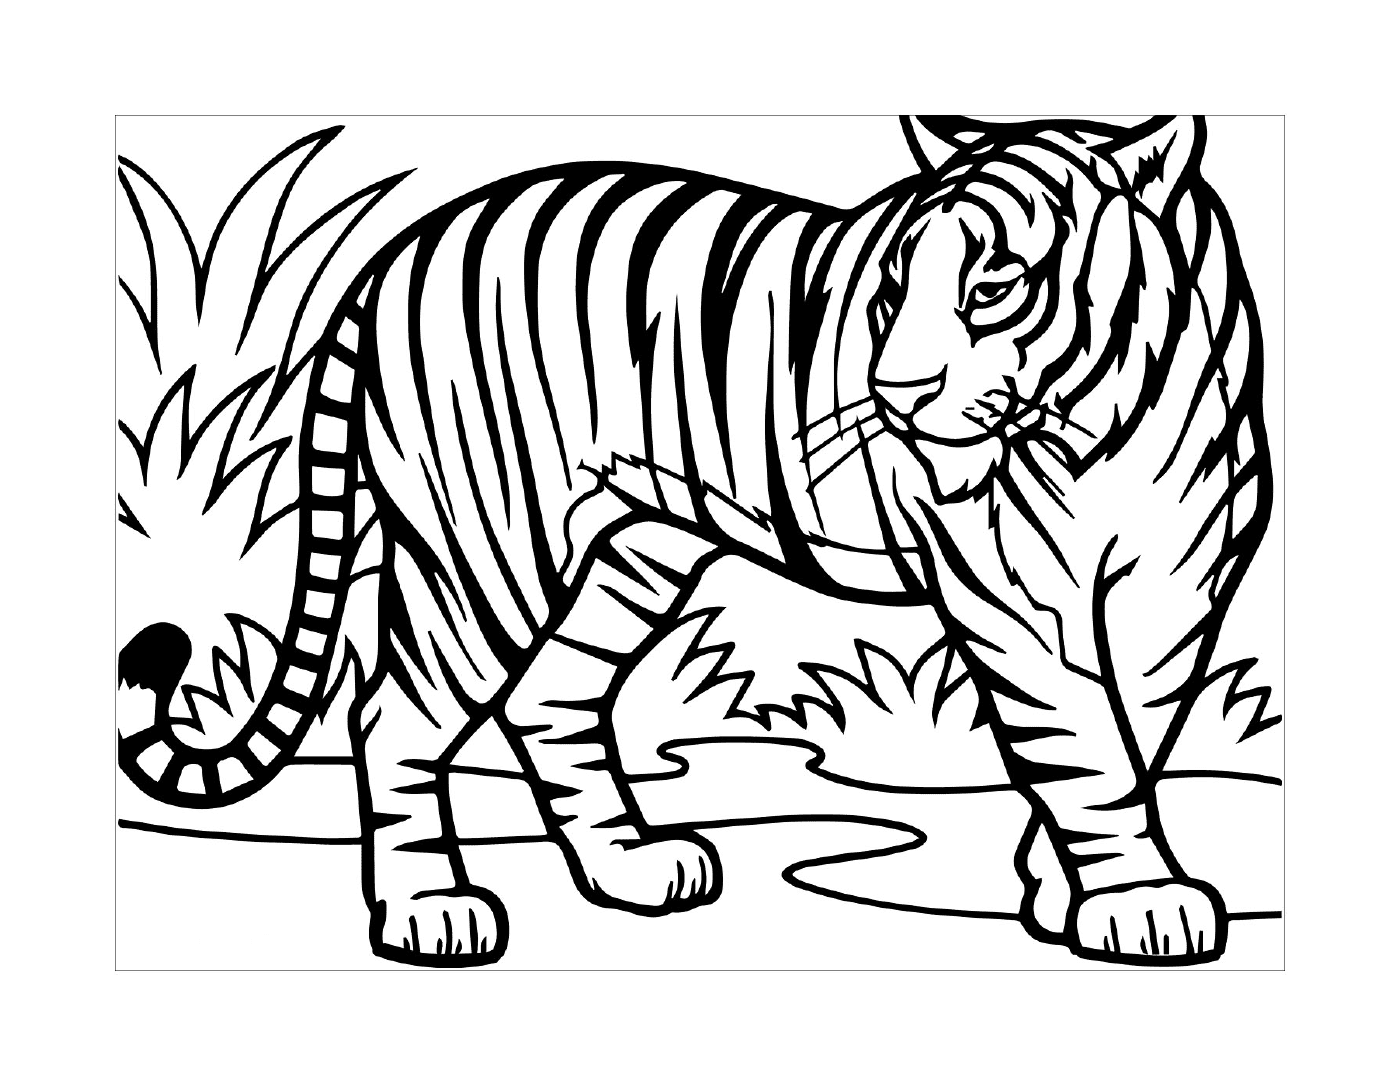   Un tigre sauvage dans la nature 